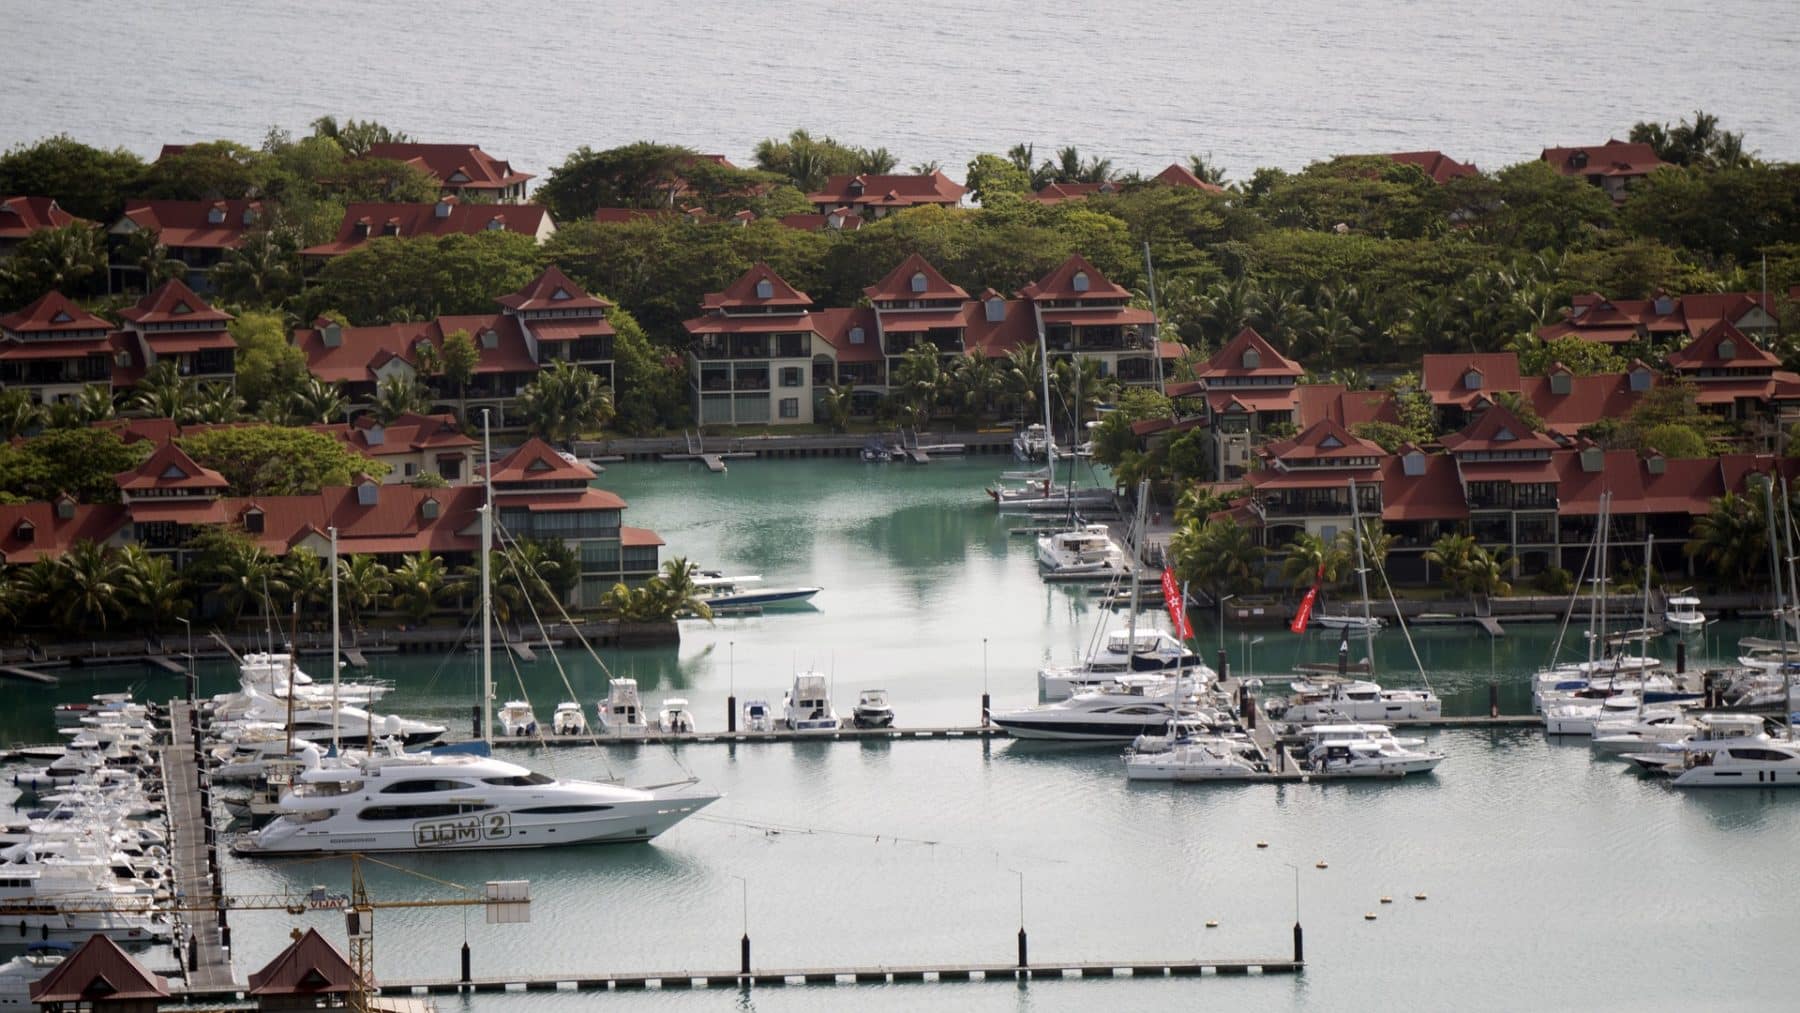 Luftaufnahme eines tropischen Yachthafens mit ordentlich geparkten Yachten, umgeben von Gebäuden mit roten Dächern und üppigem Grün, gelegen an einer ruhigen, blauen Bucht, perfekt für einen Segelurlaub